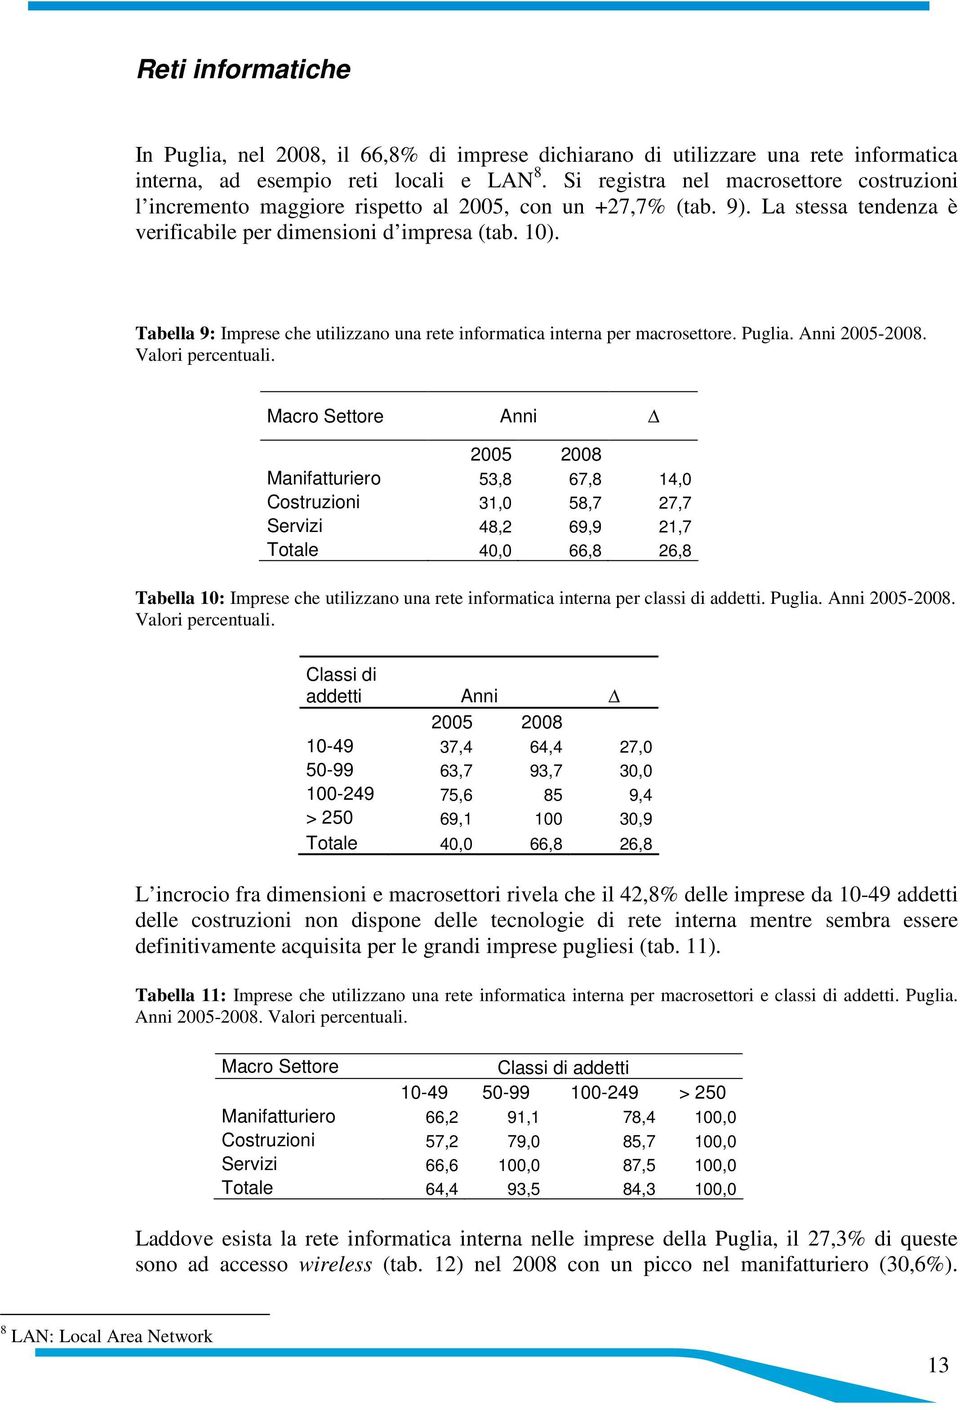 Tabella 9: Imprese che utilizzano una rete informatica interna per macrosettore. Puglia. Anni 2005-2008. Valori percentuali.